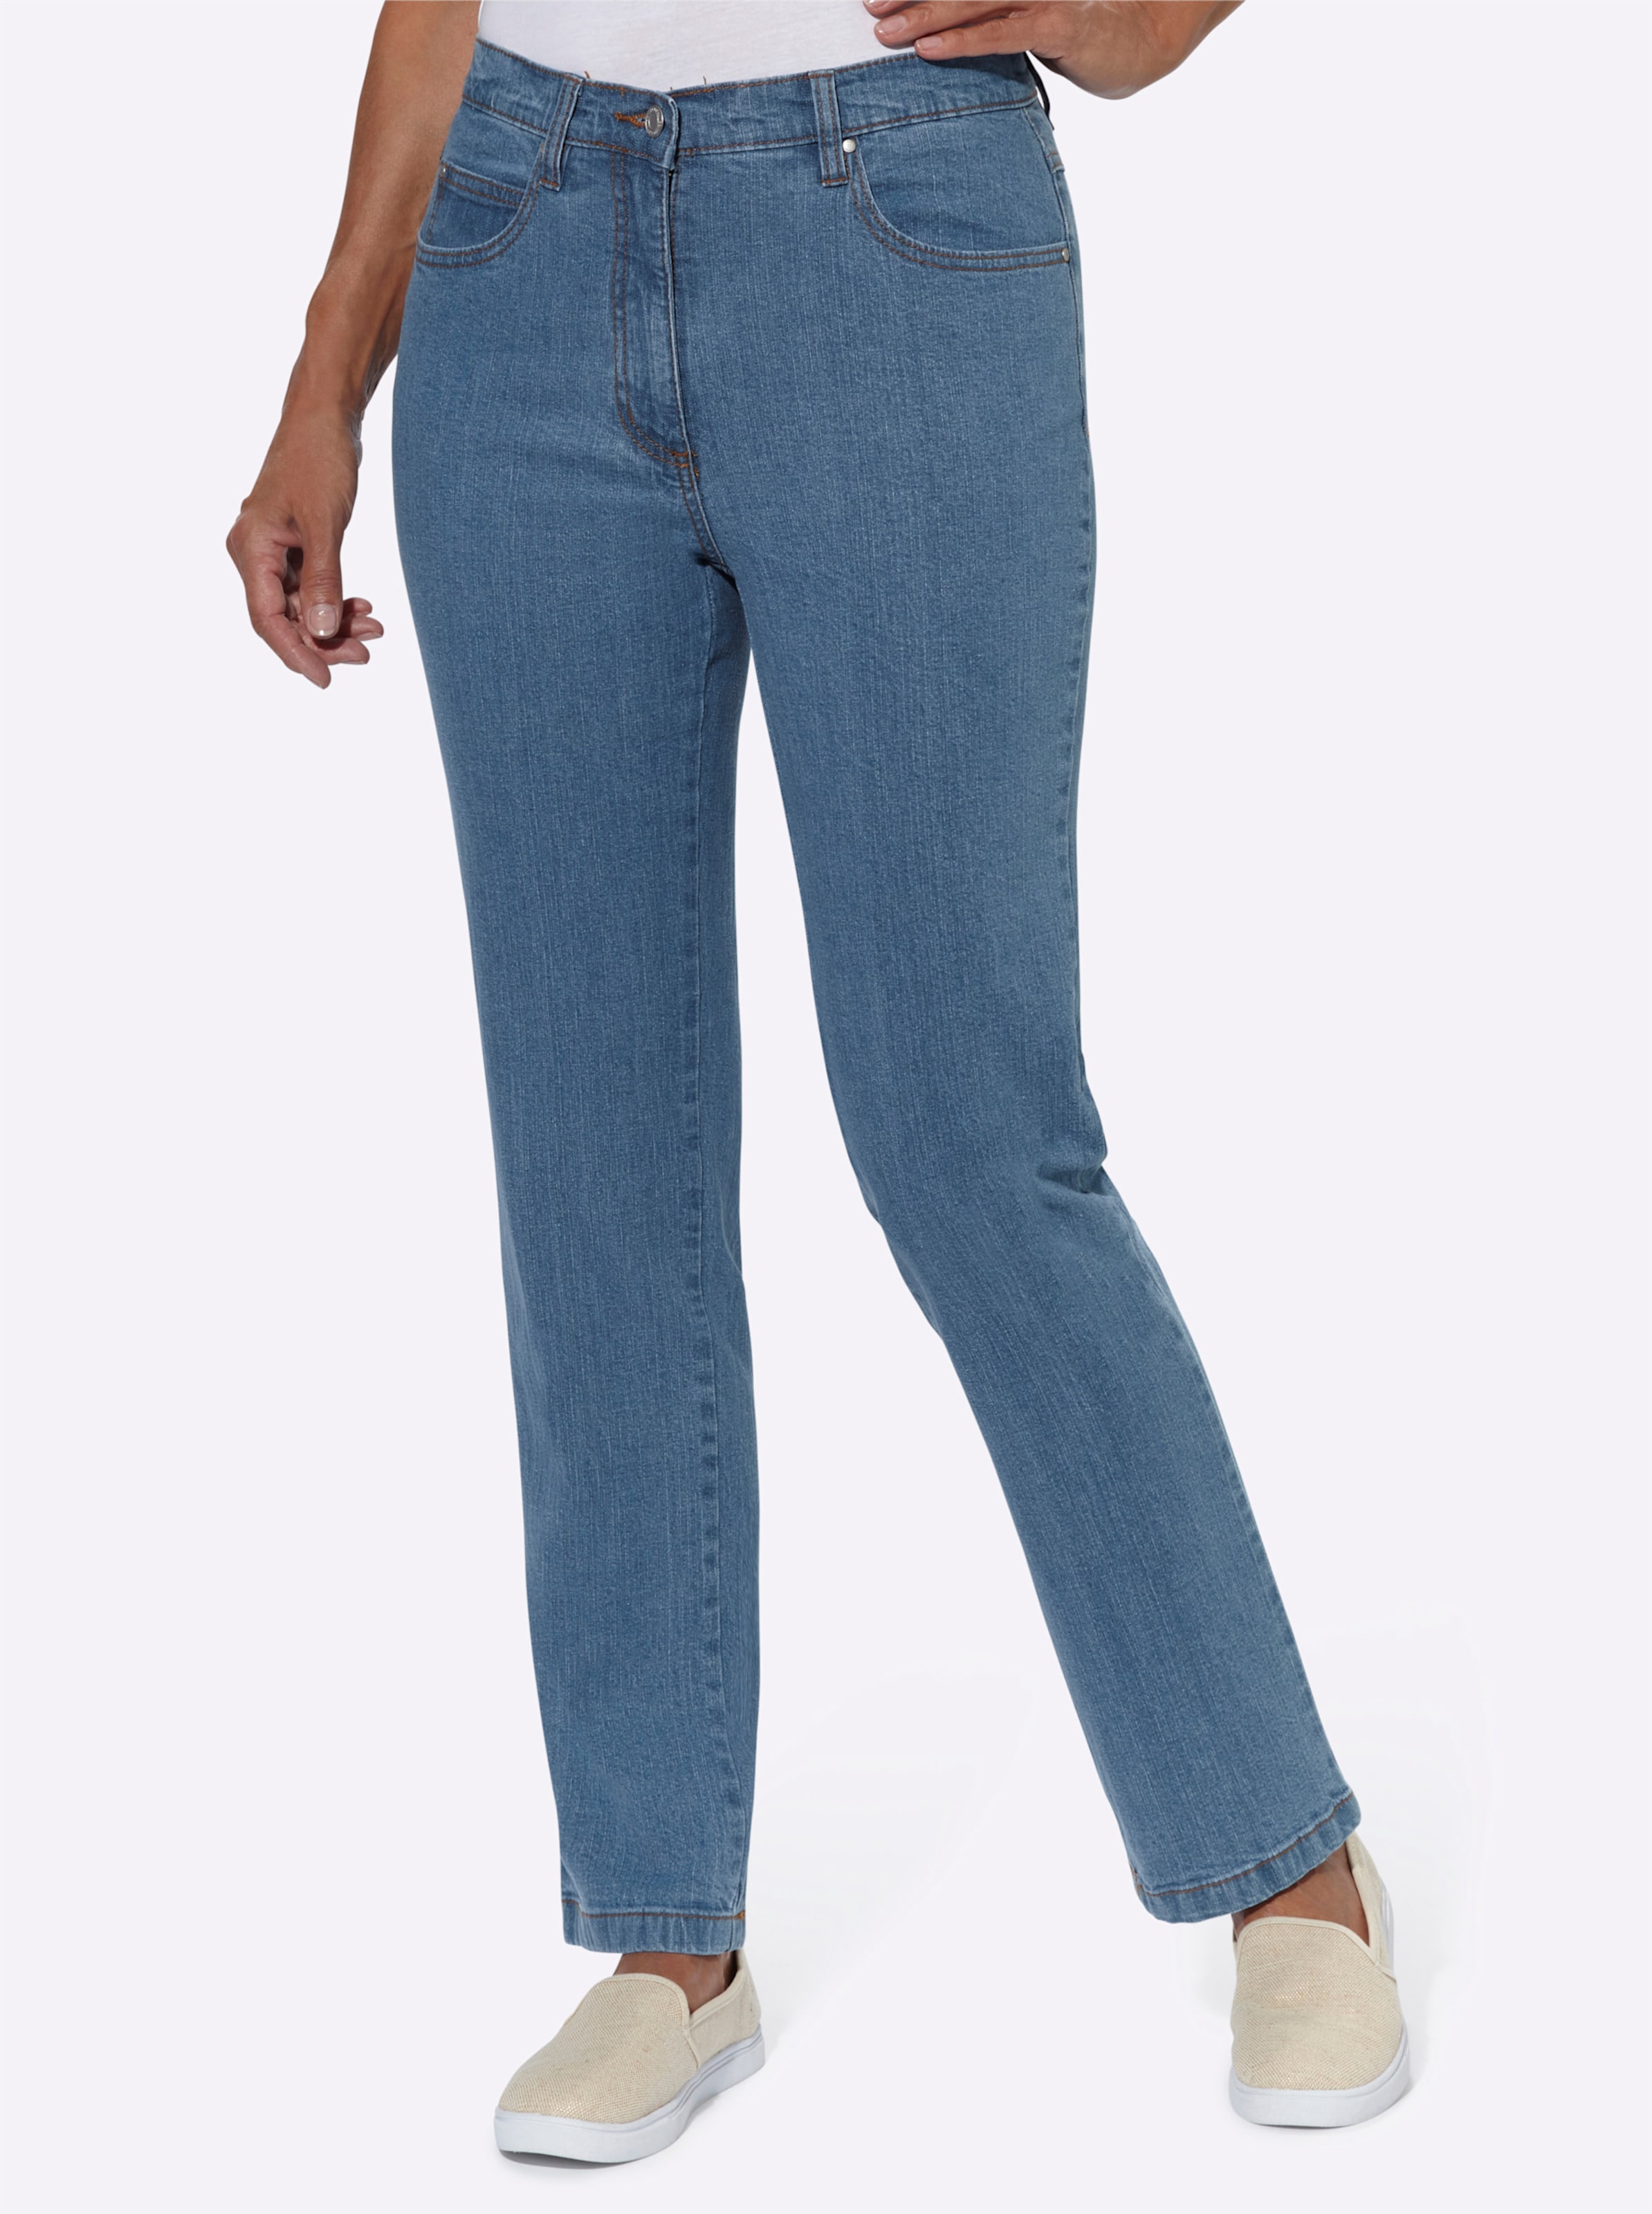 Witt Damen 5-Pocket-Jeans, blue-bleached